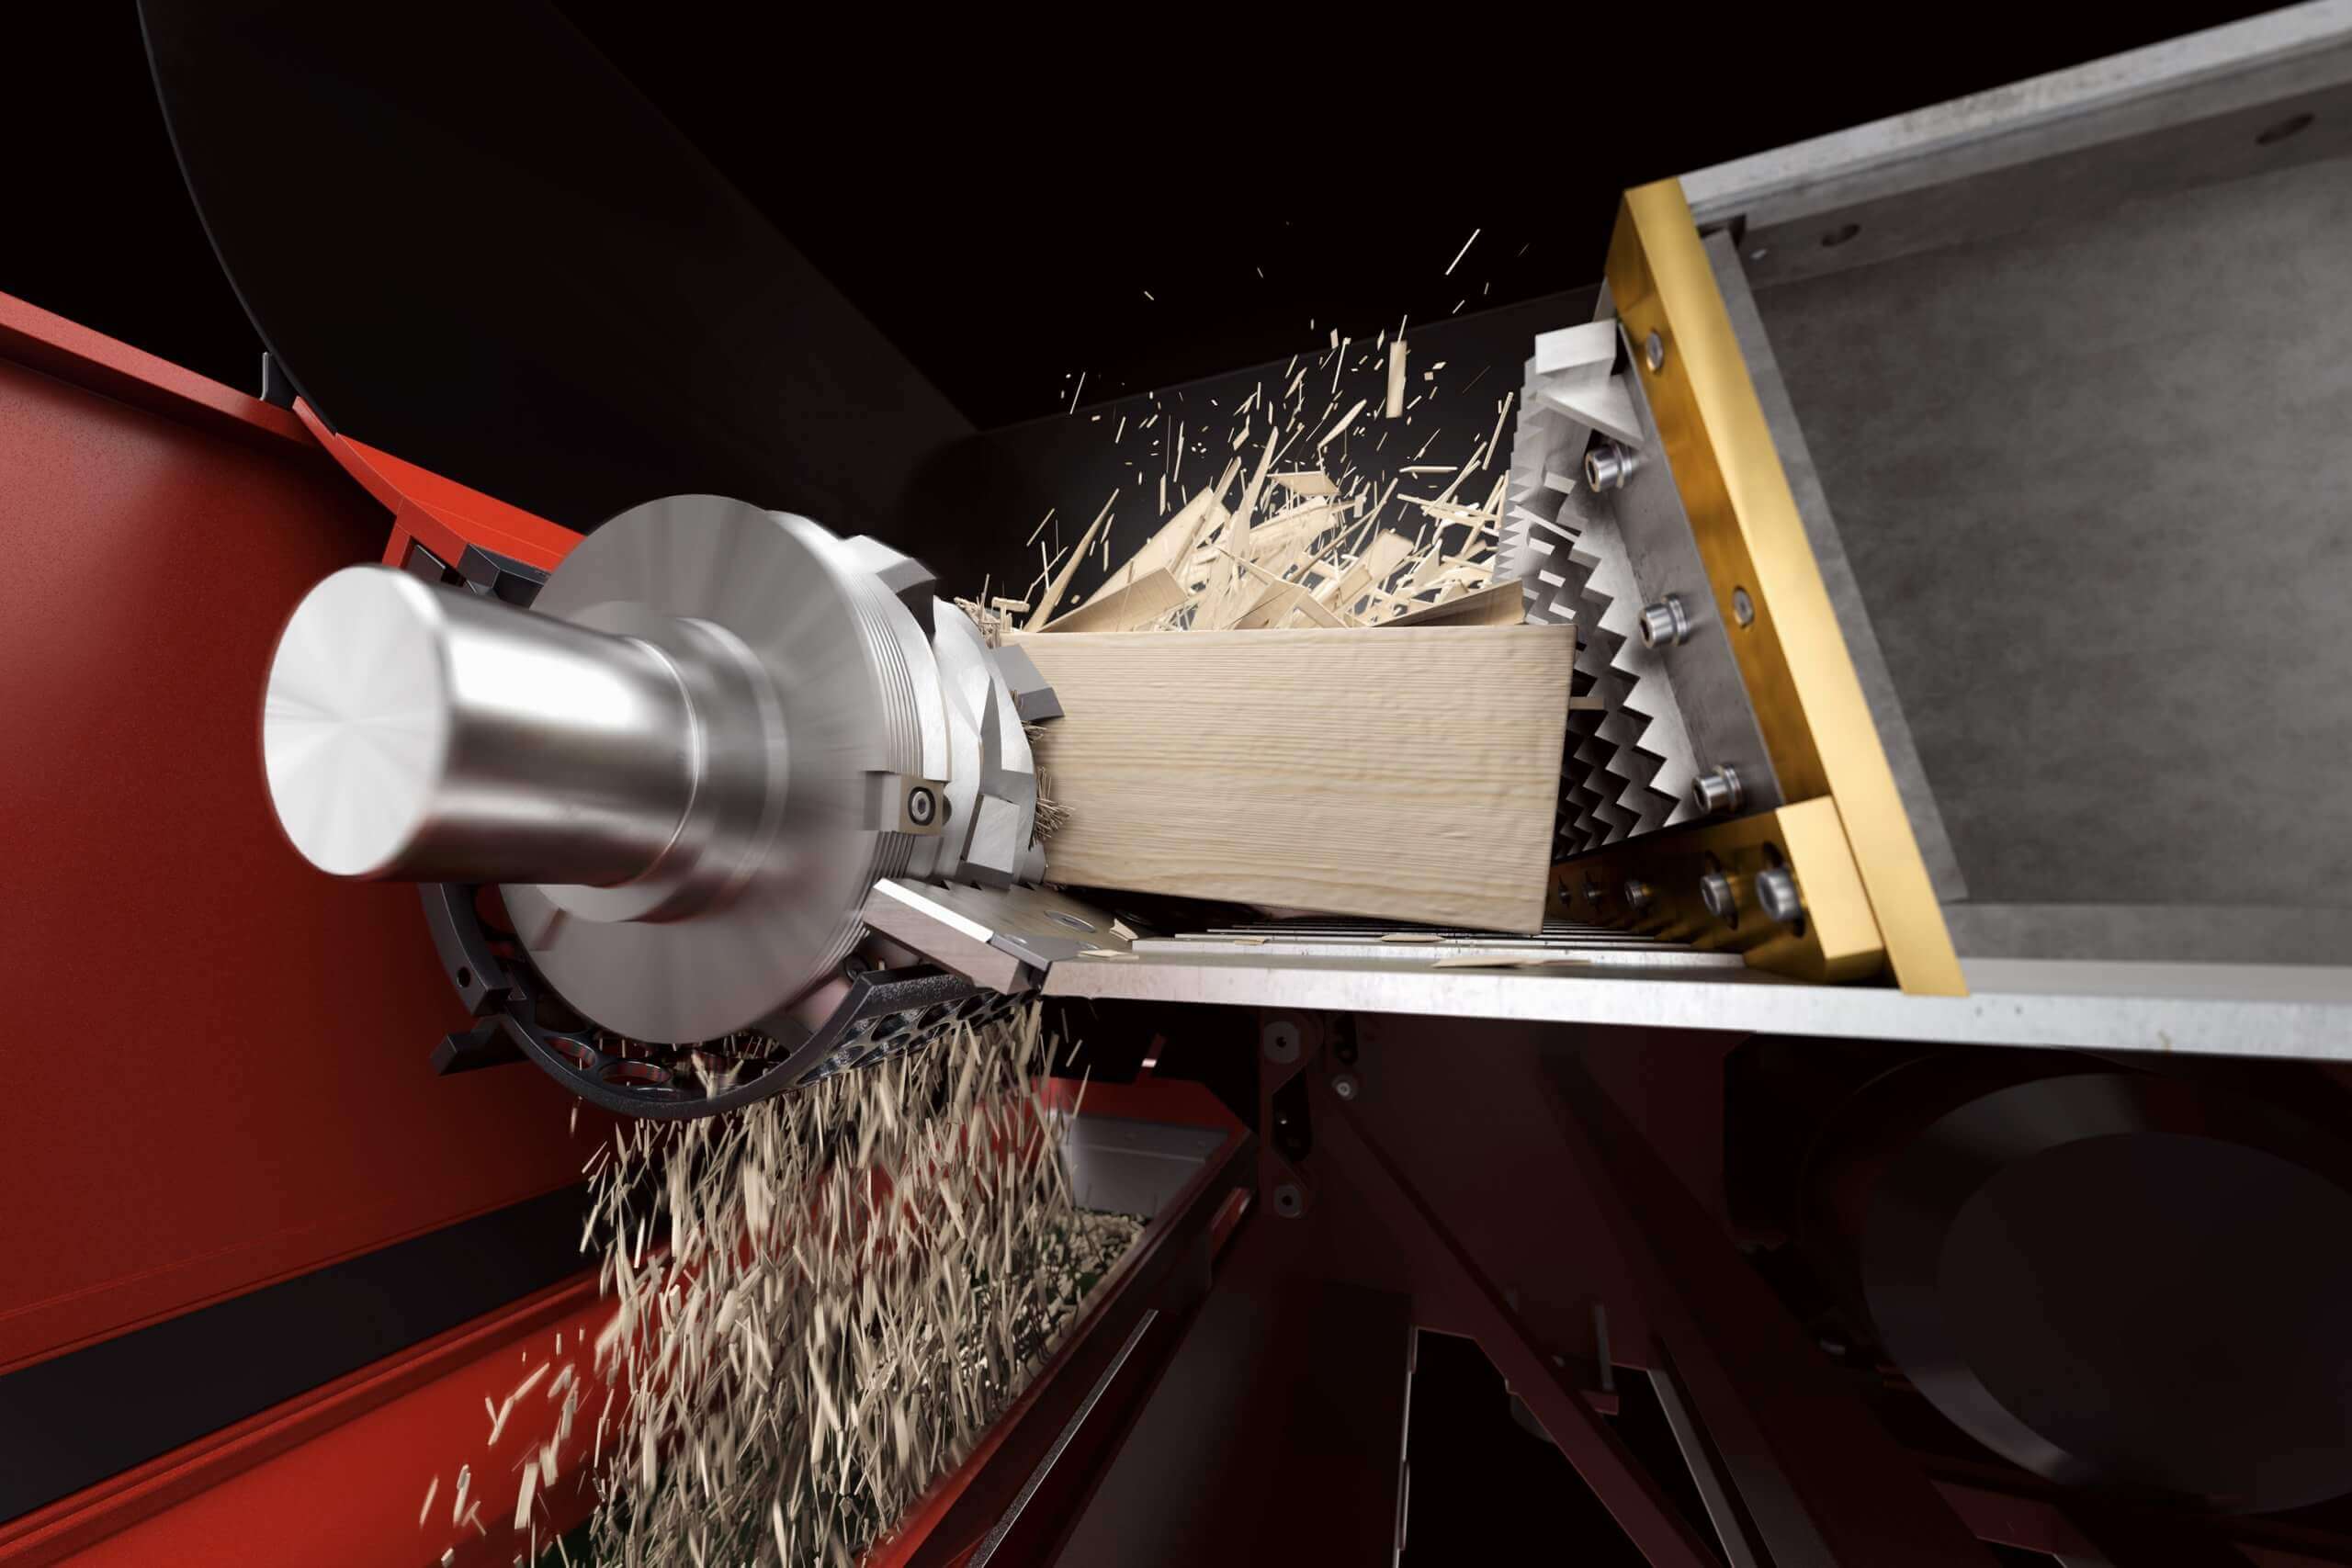 View inside a shredder cutting wood